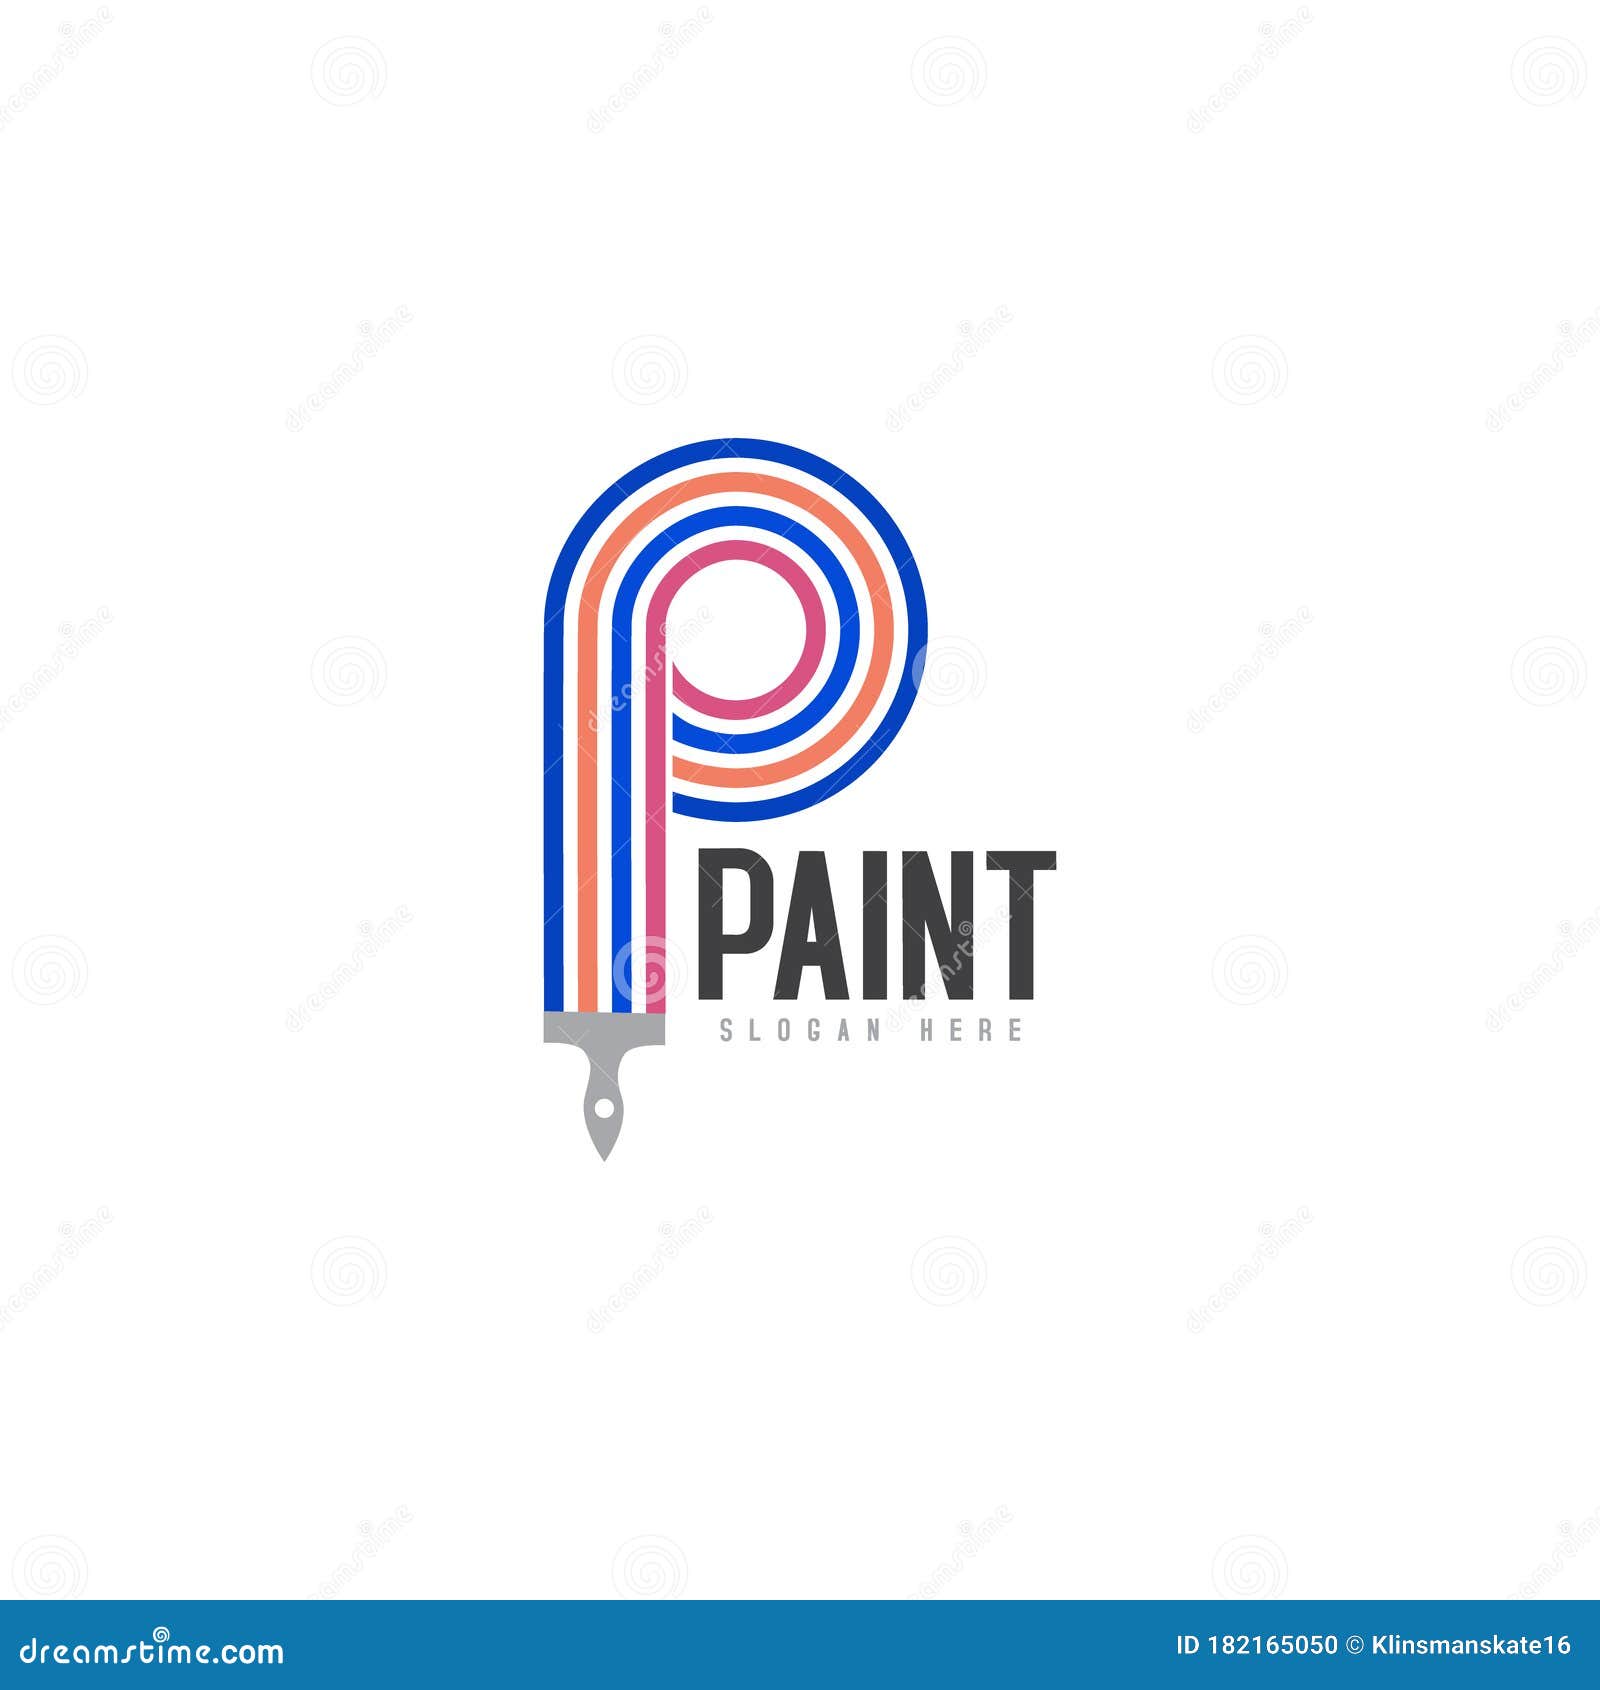 Plantilla De Diseño De Logotipo Pintura Para Empresas Y Foto archivo - Imagen de marca: 182165050